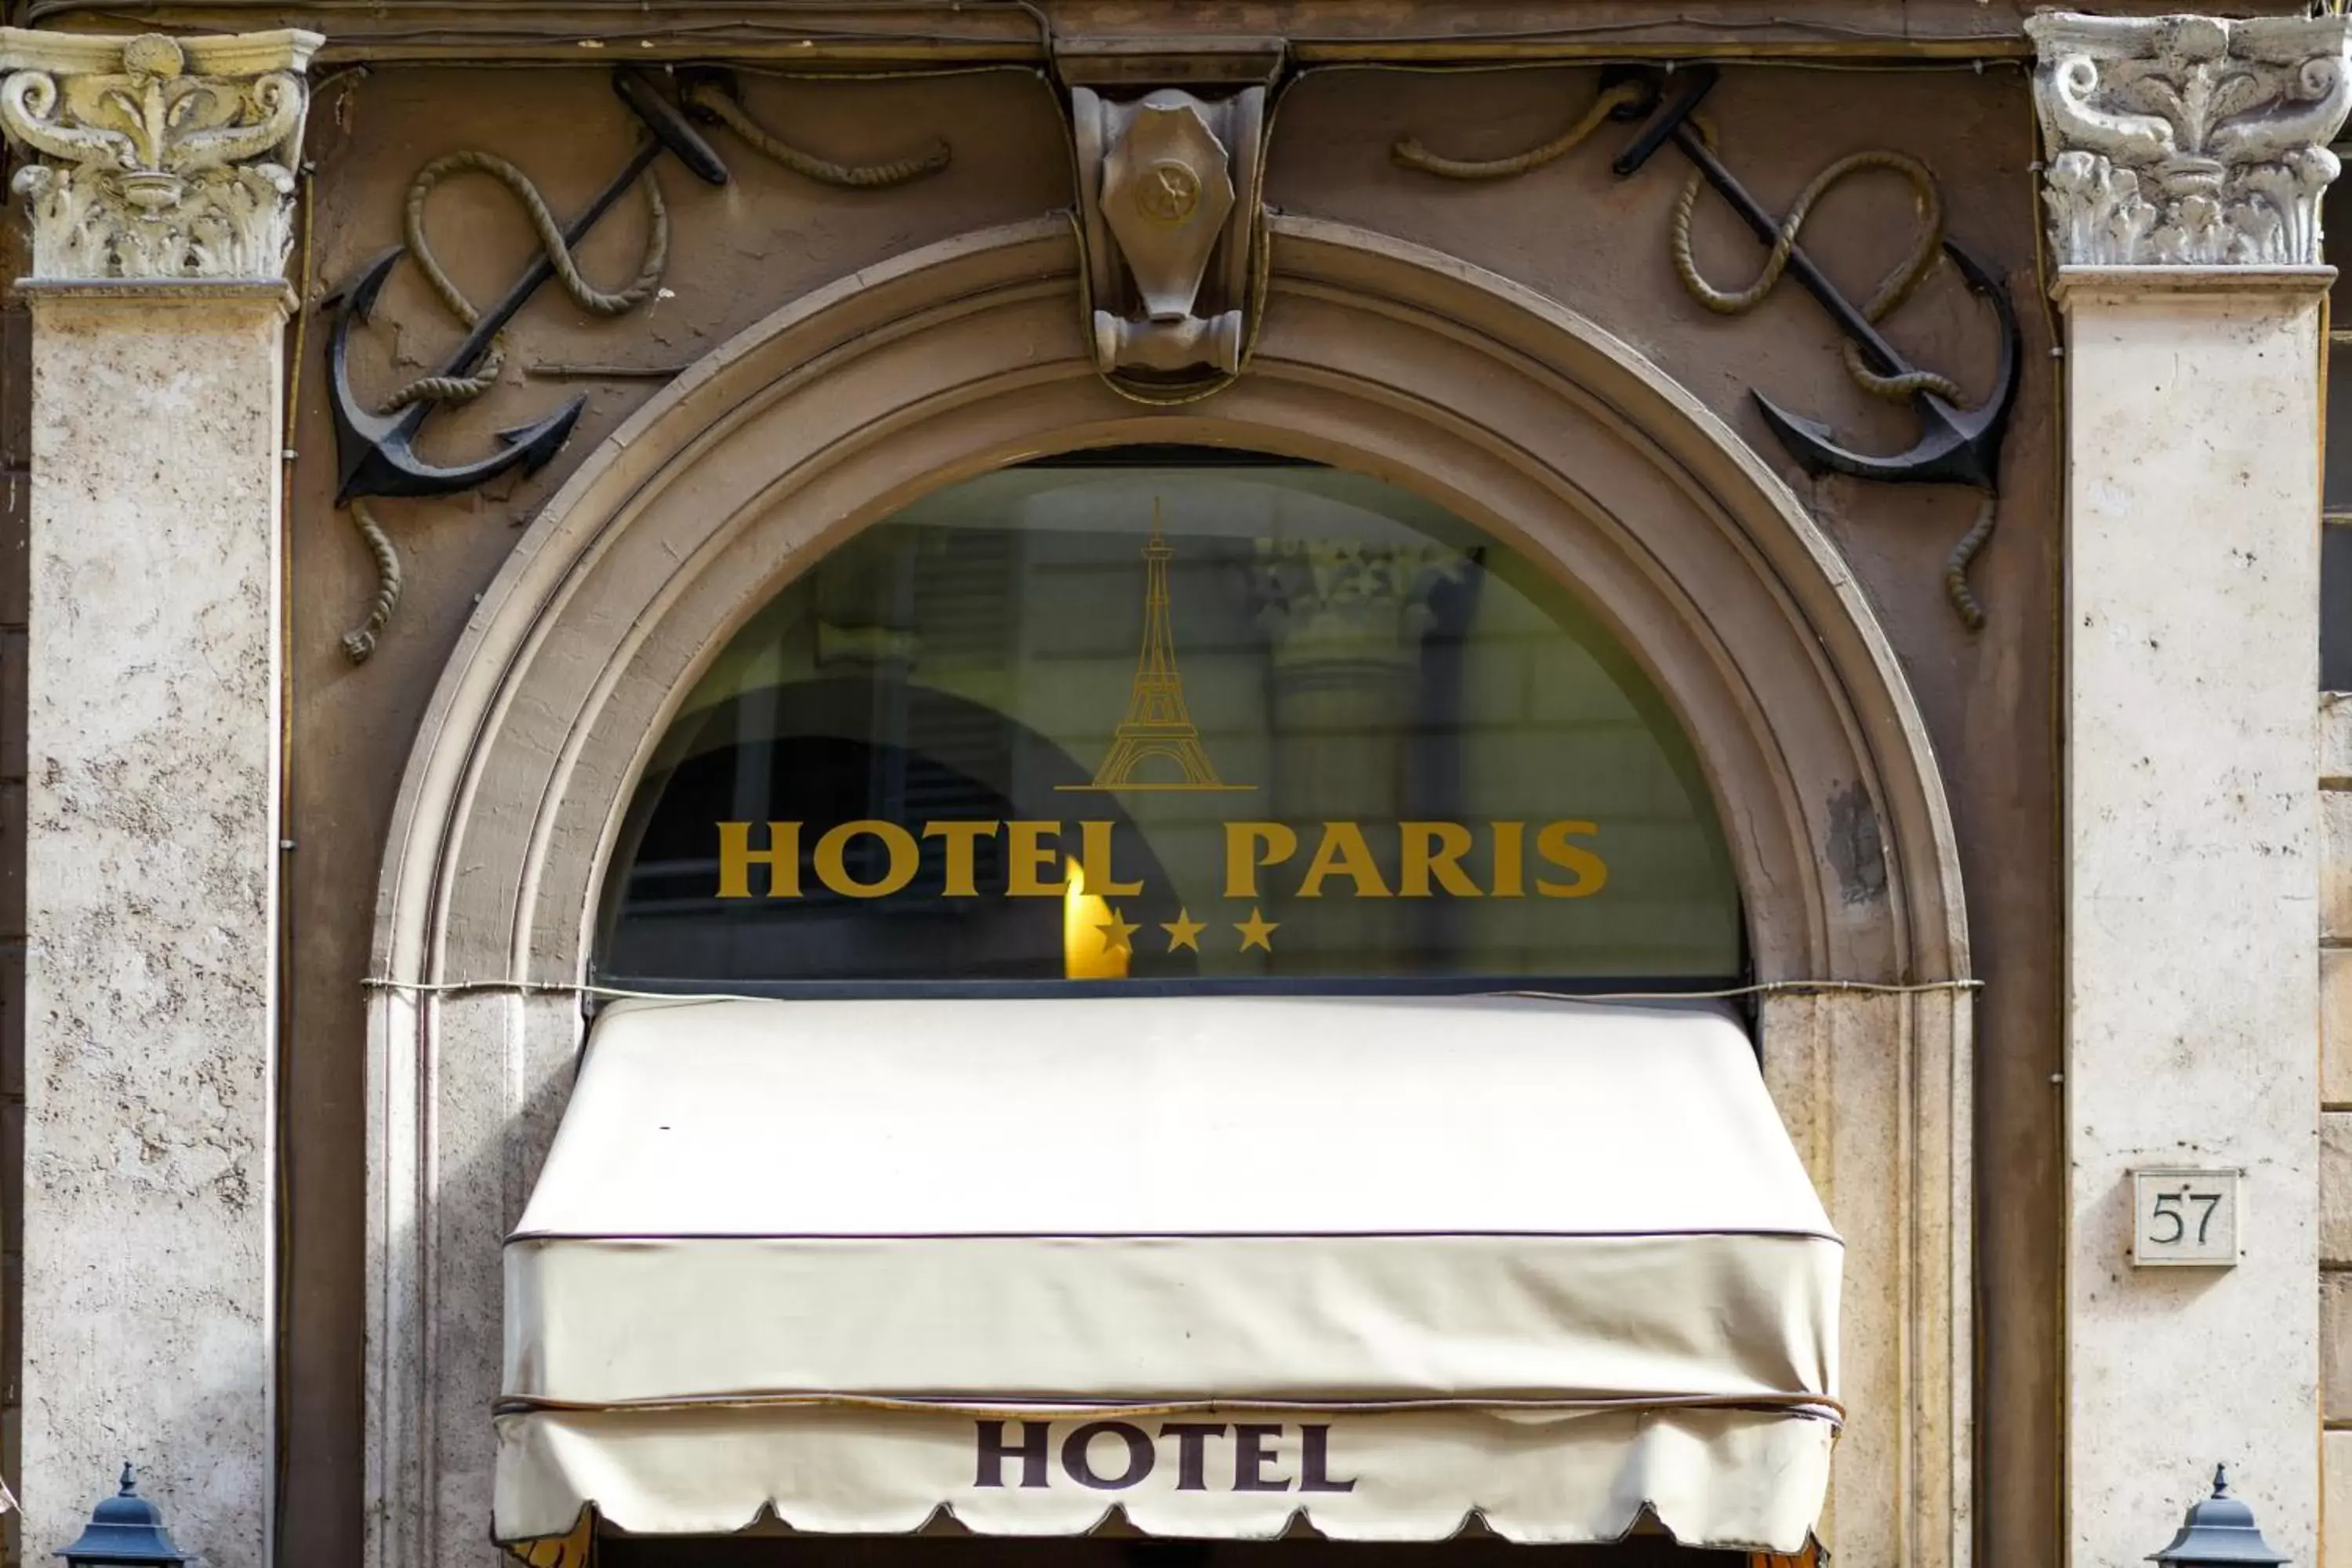 Property building, Facade/Entrance in Hotel Paris